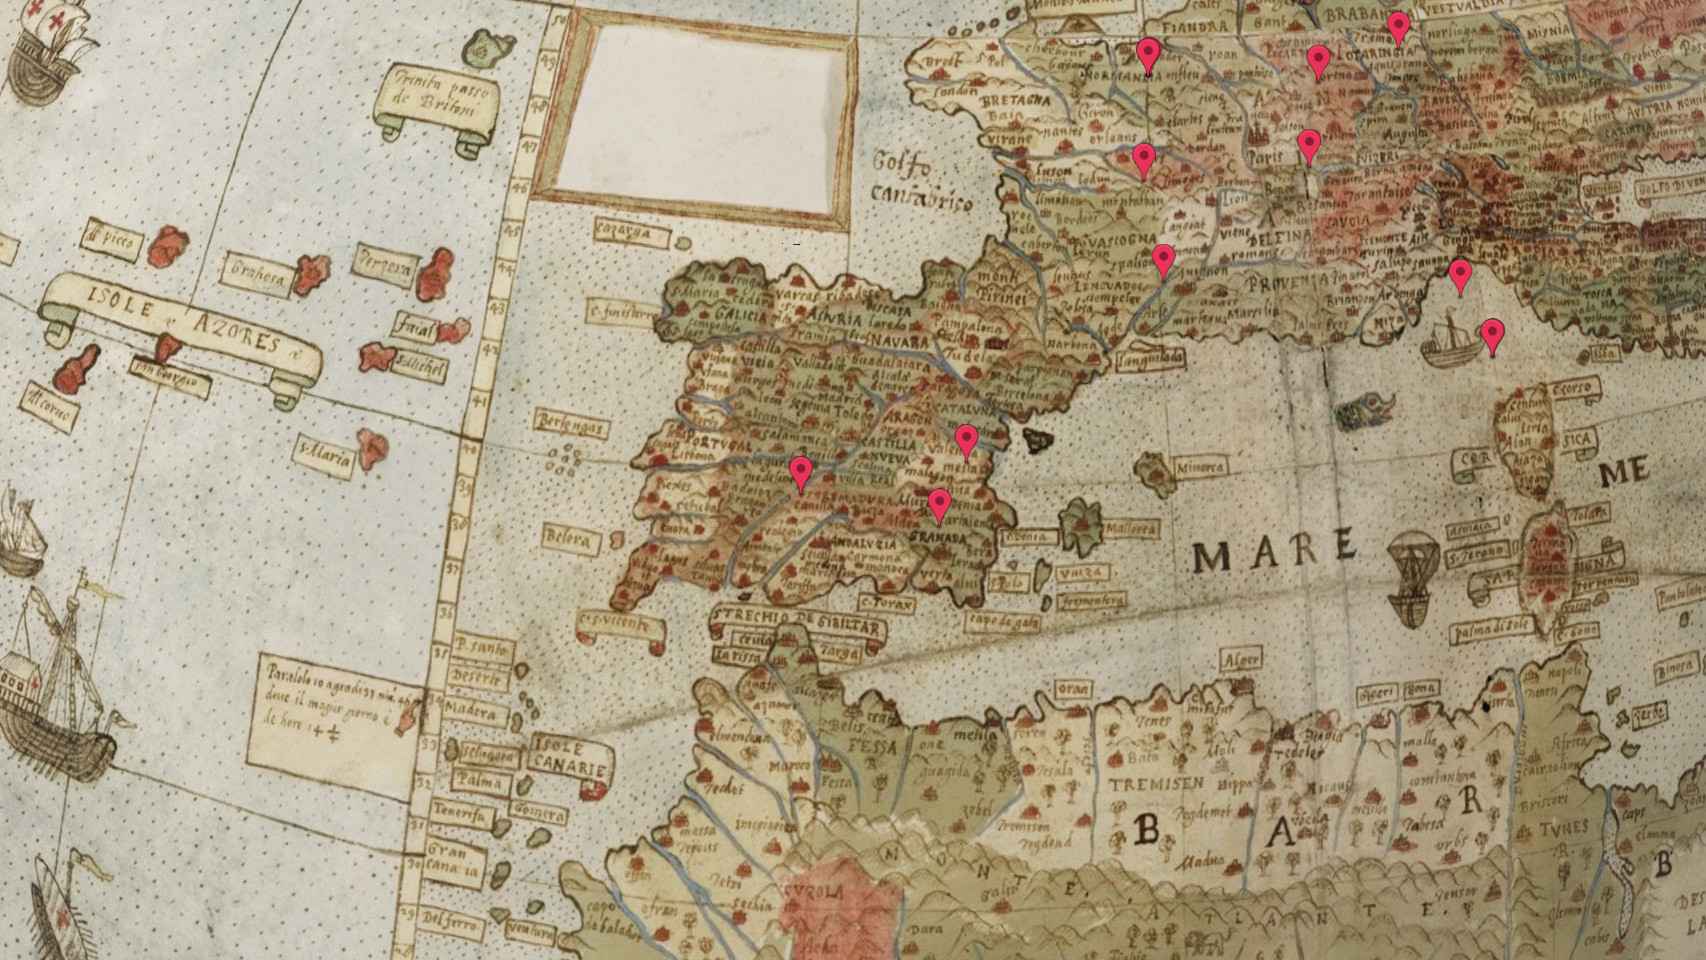 España dibujada en el mapa de Monti.